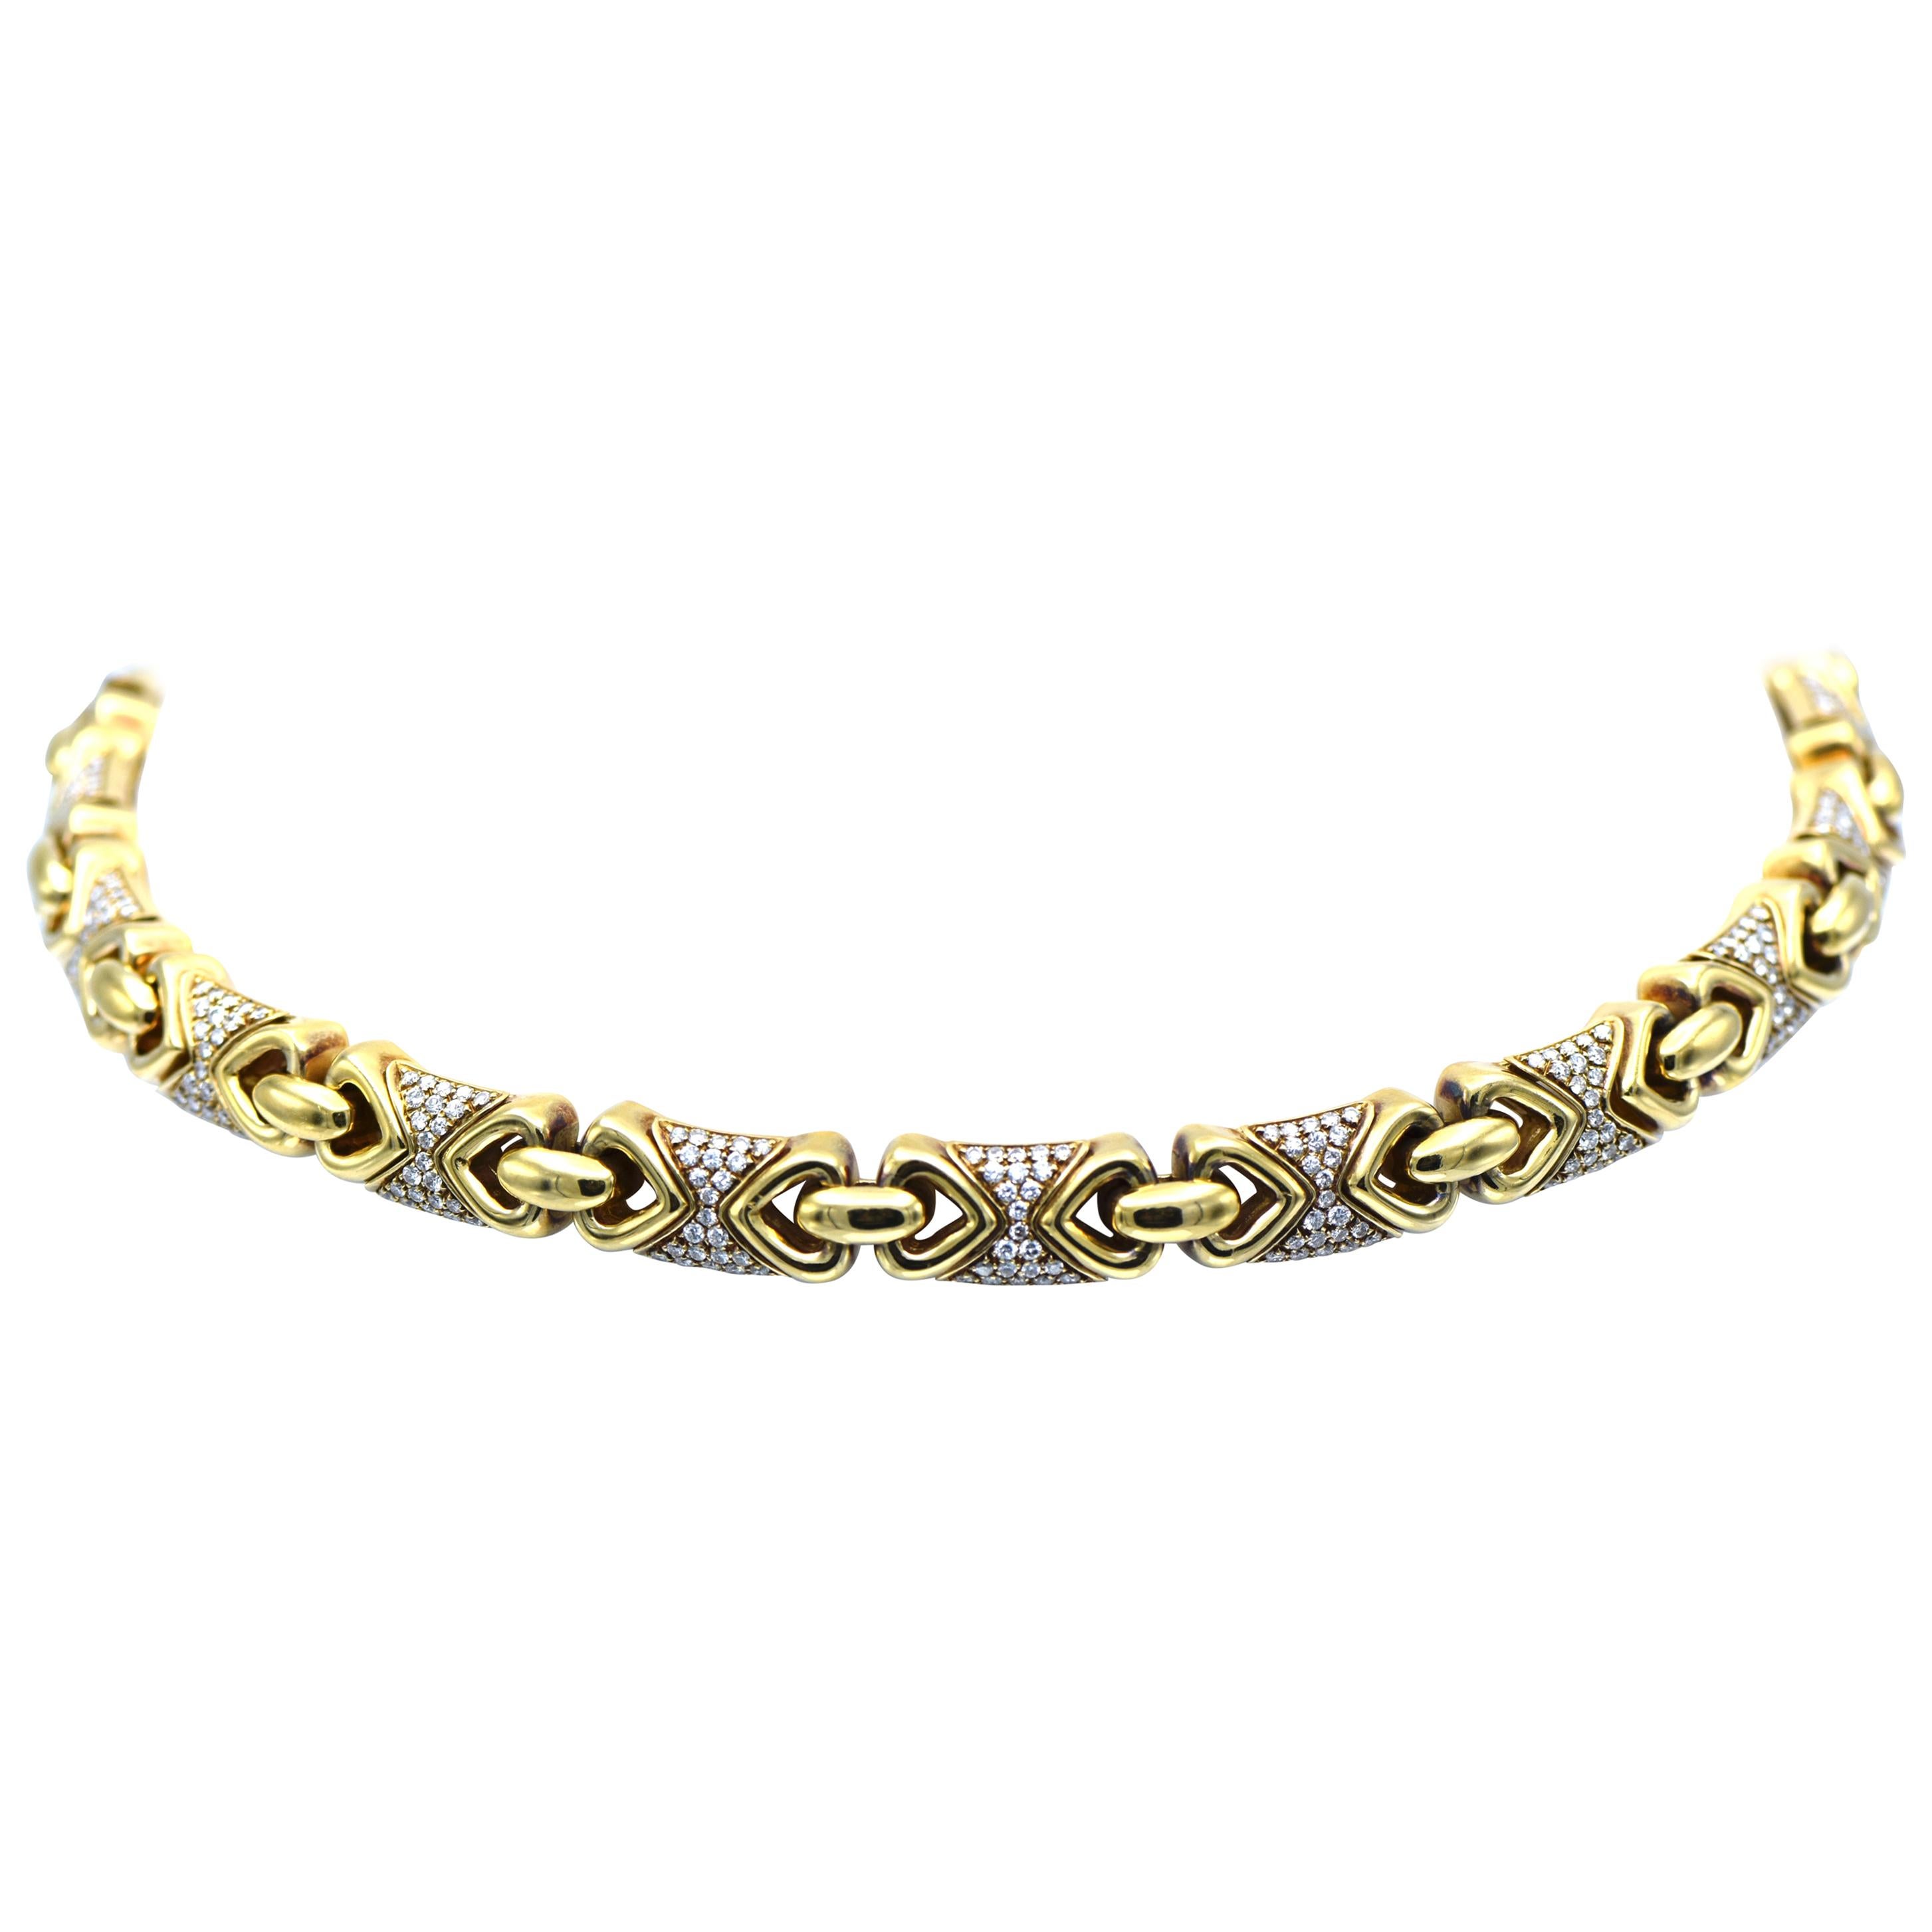 Bulgari Gold and Diamond 'Doppio Cuore' Necklace